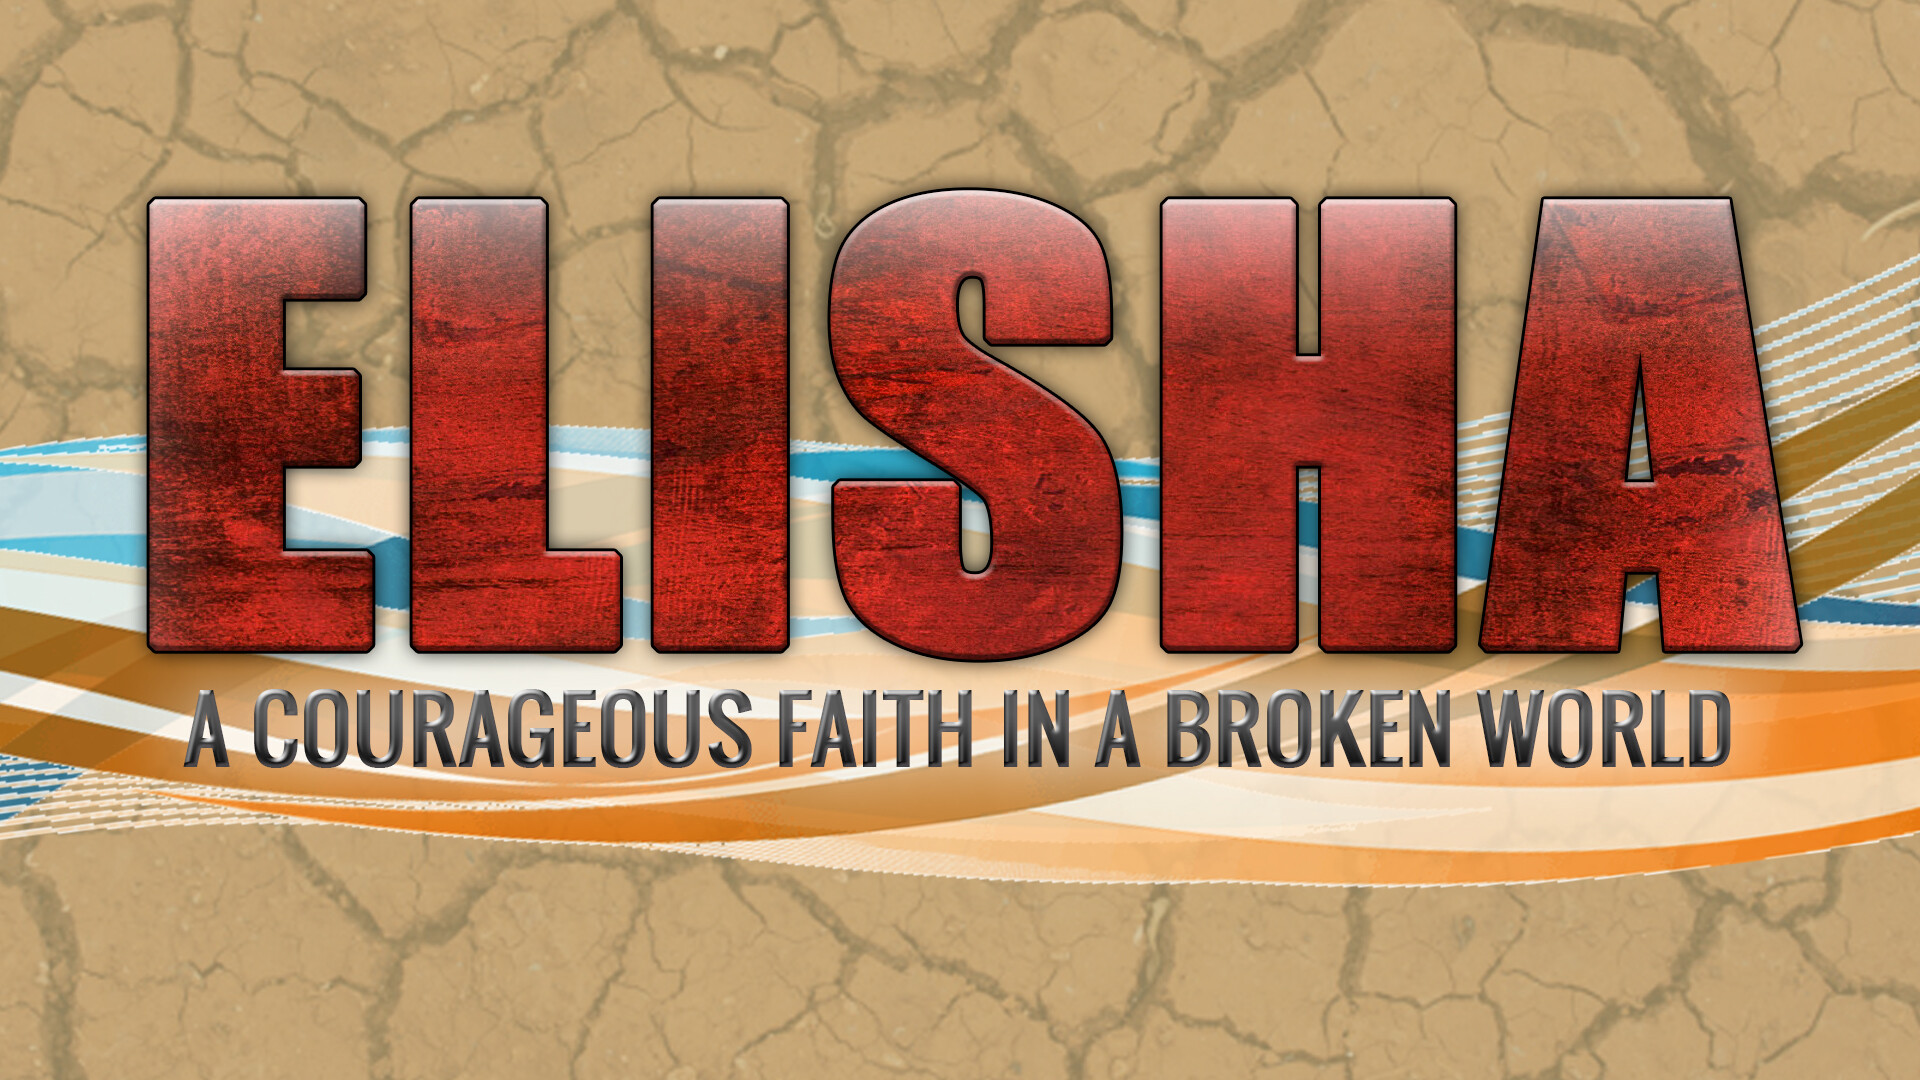 The Call of Elisha